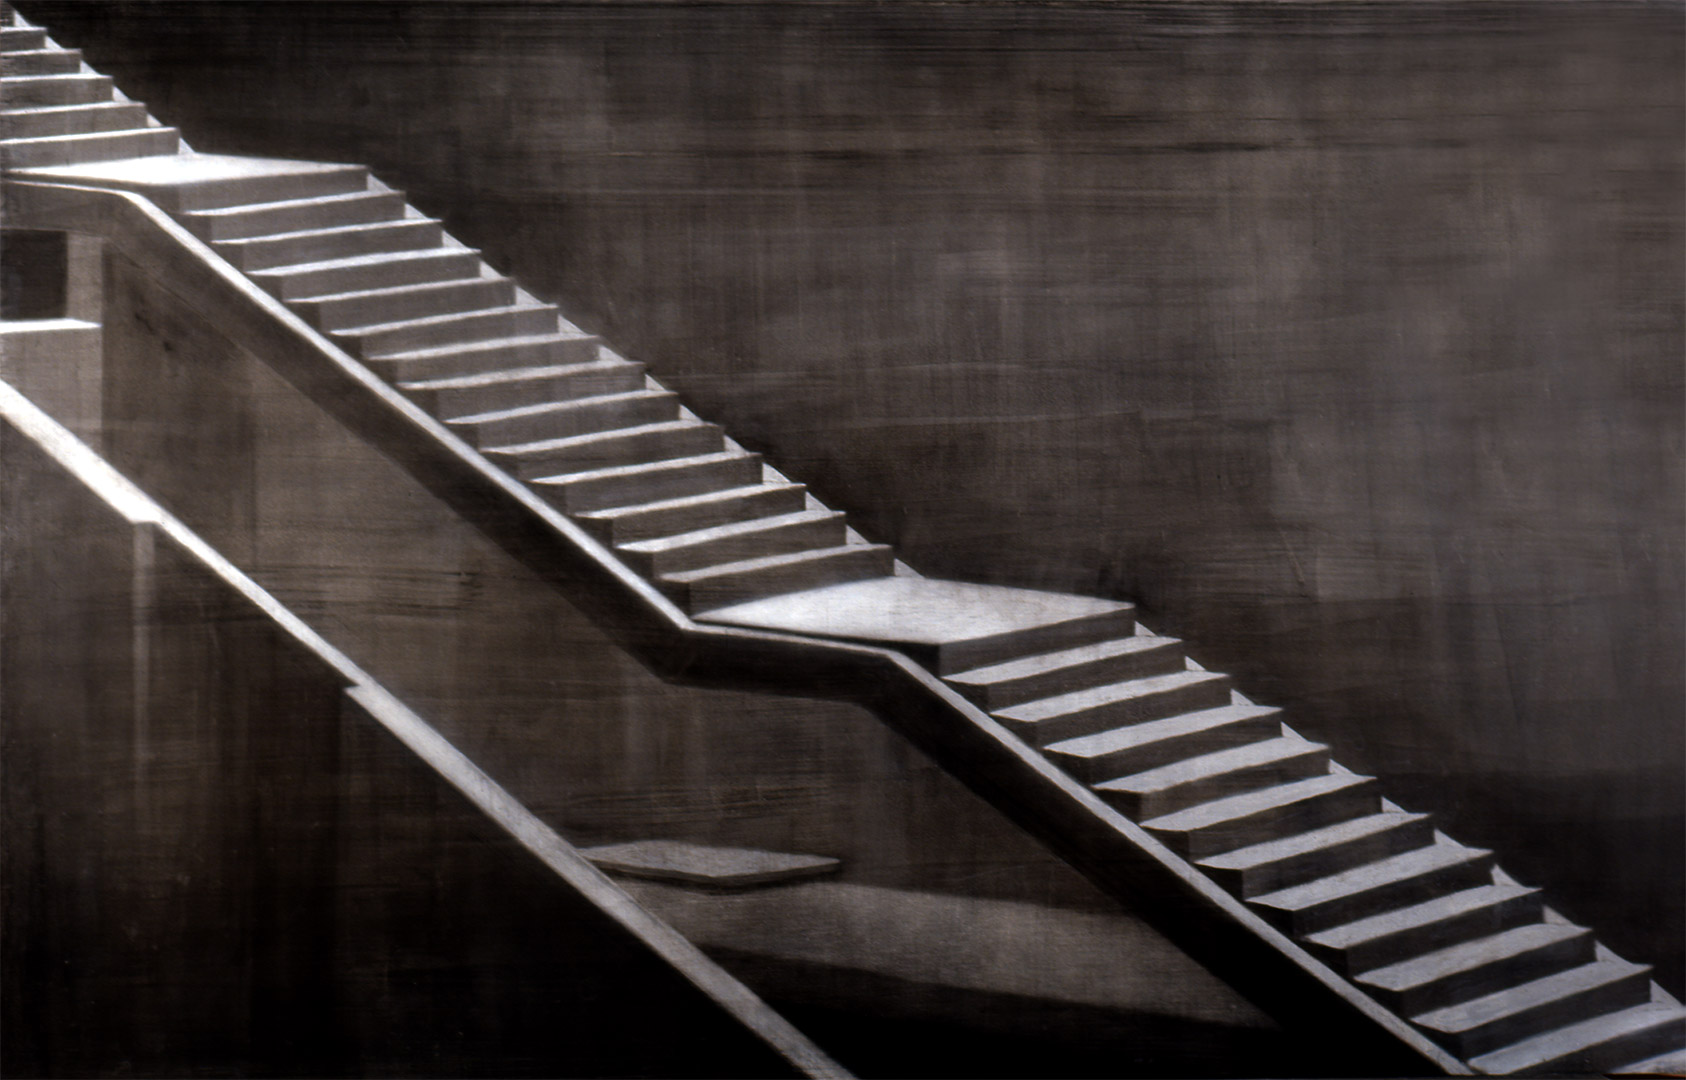 Stairs Under Construction </br>(Escalera en construcción) - Acrylic on paper glued on board